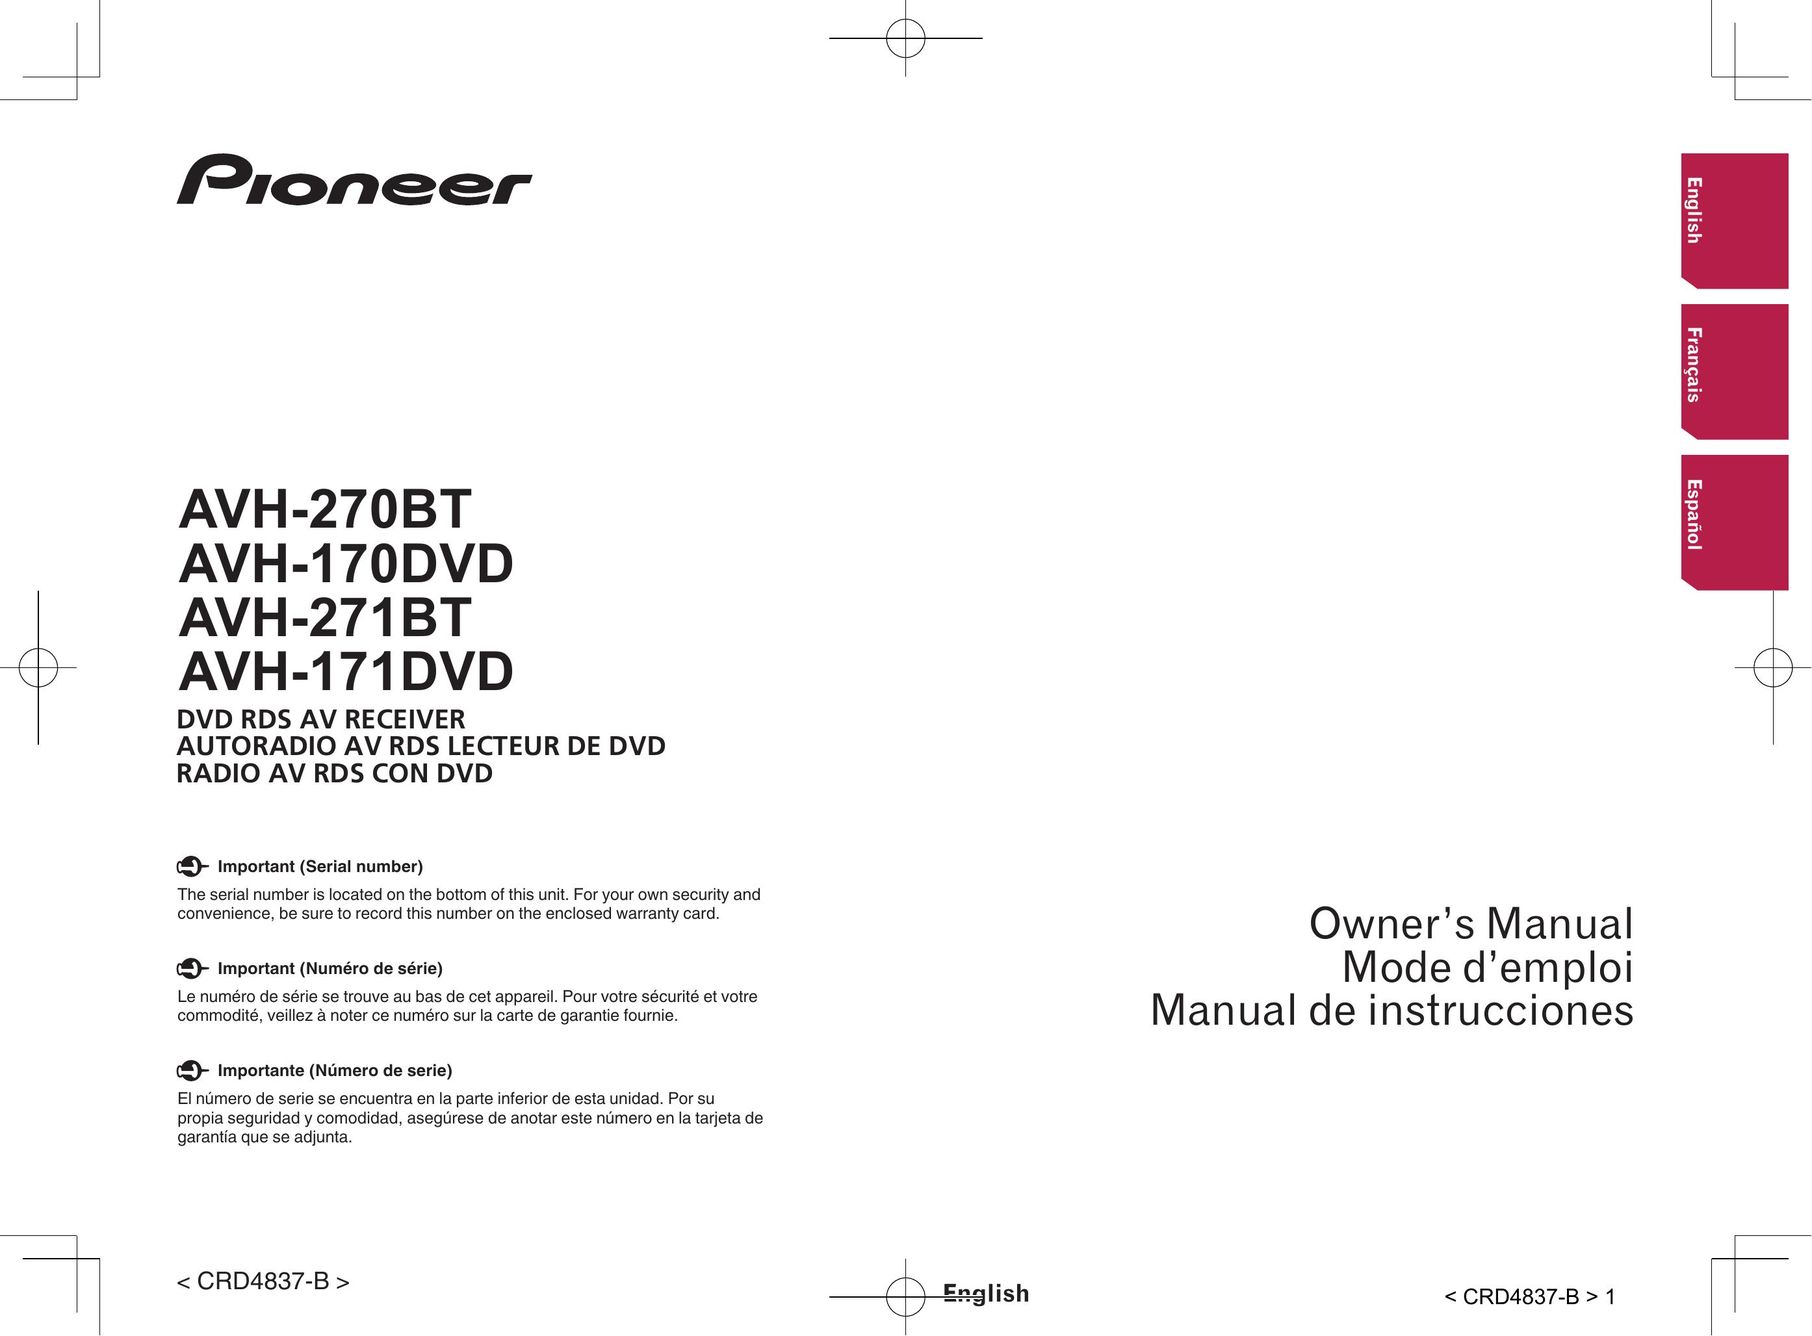 Pioneer AVH-271BT TV Video Accessories User Manual